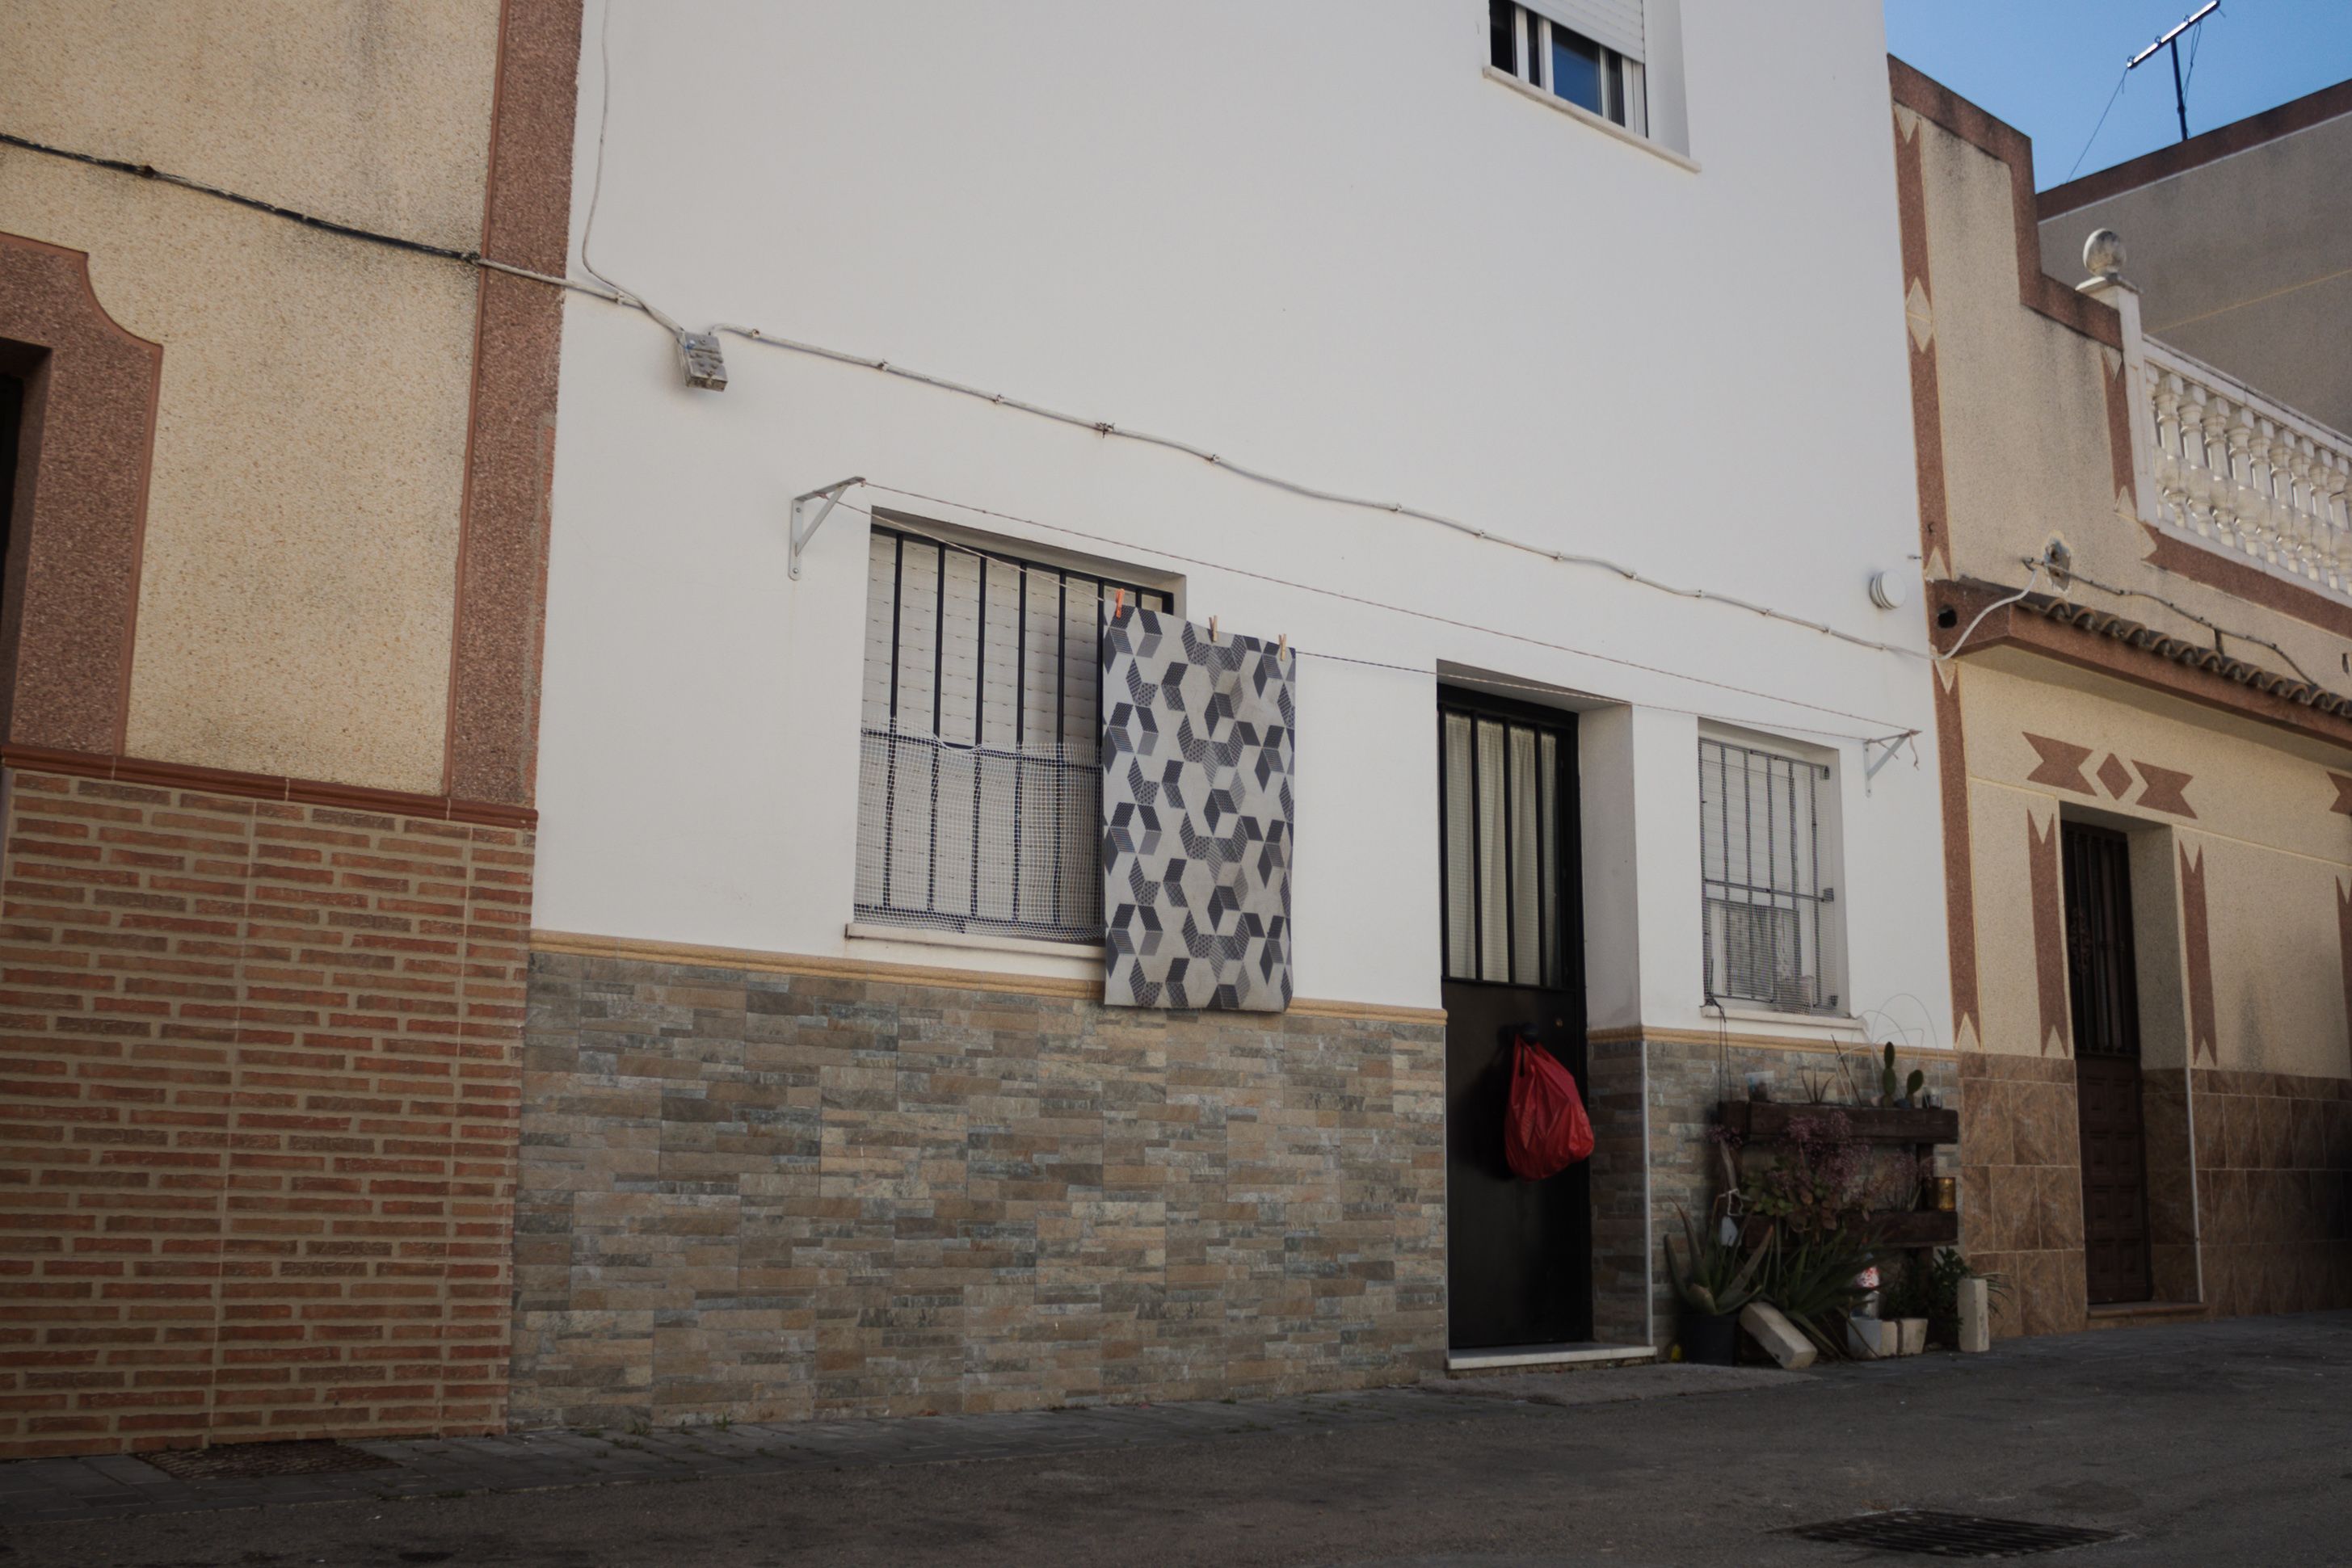 El número 29, en la planta alta, es la sede de Barveal, en Guadalcacín (Jerez), que ha recibido 4 millones por dos contratos de emergencia con la Junta.